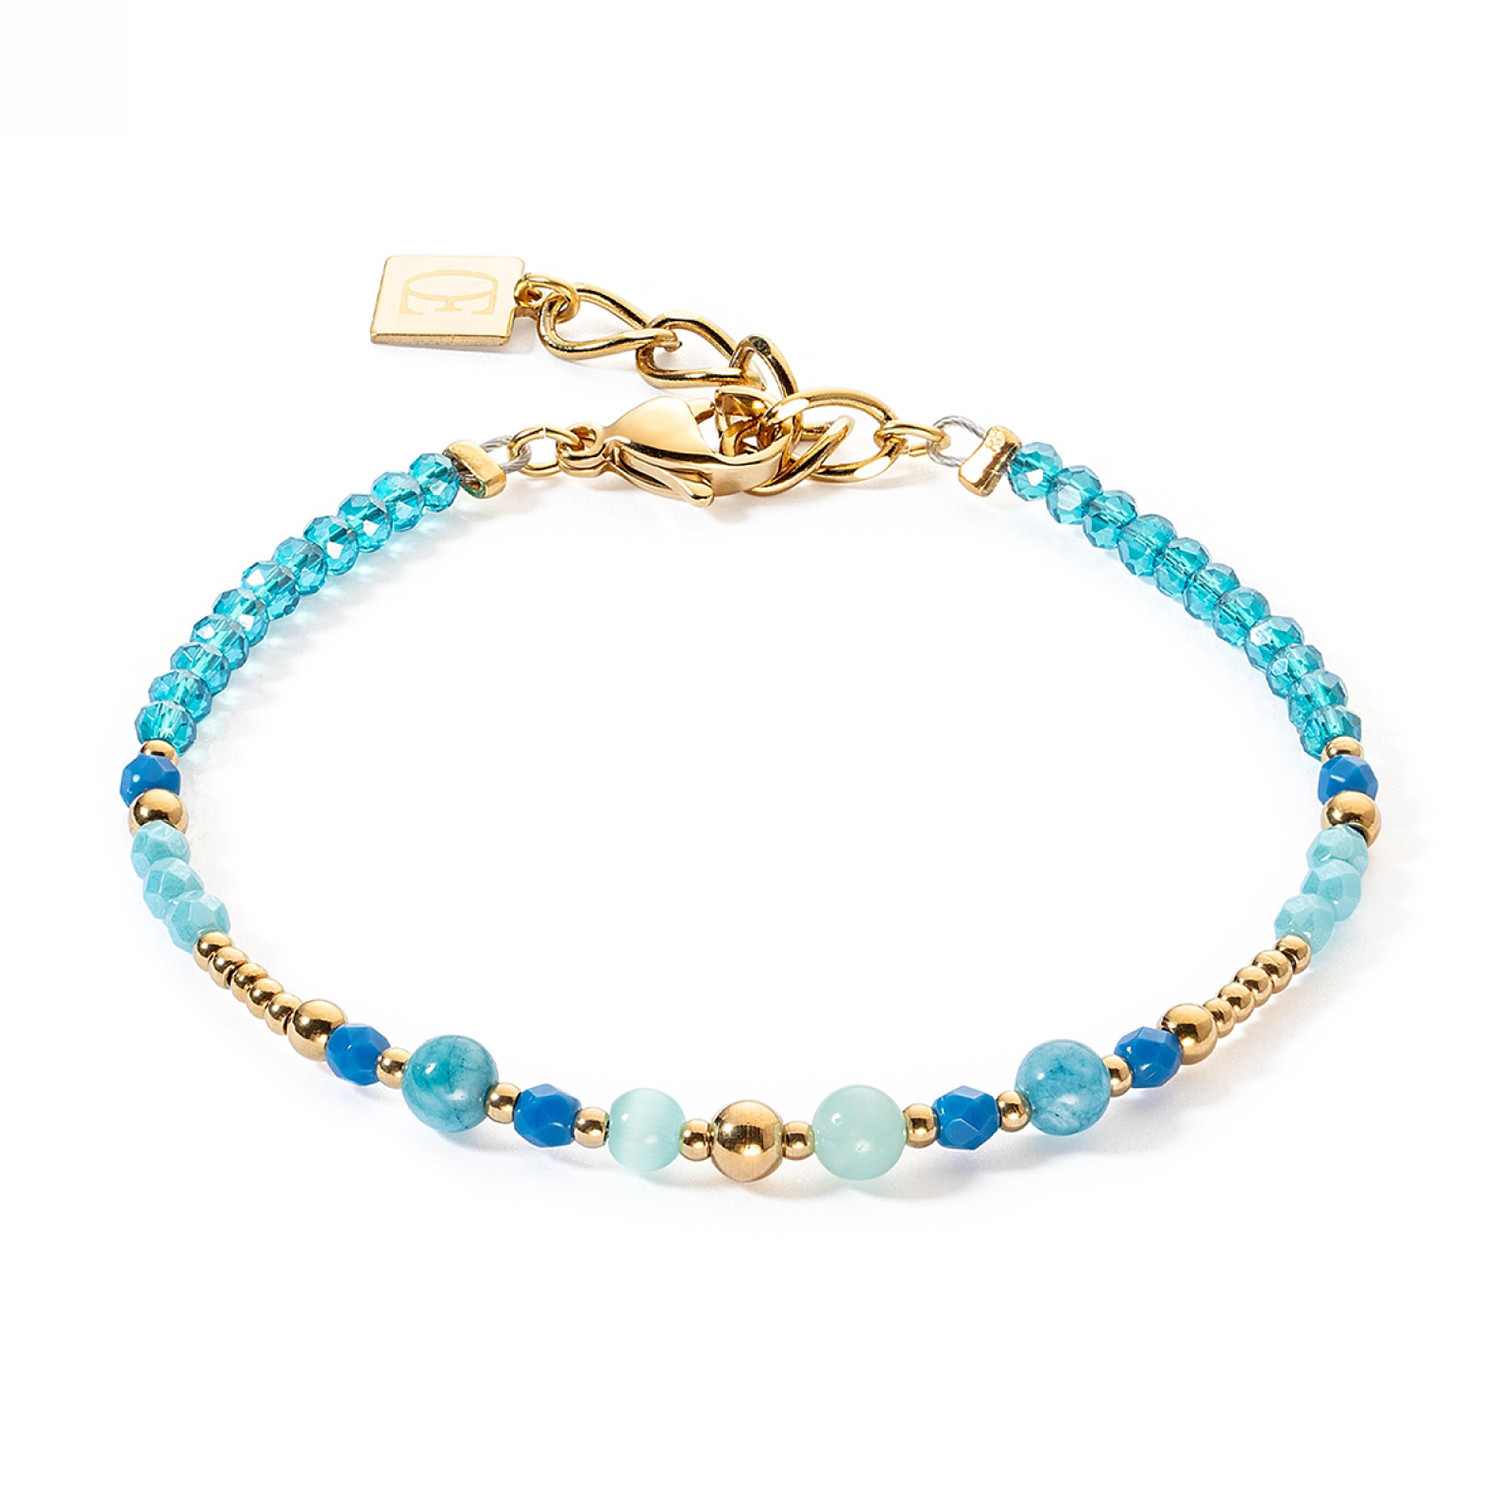 Bracelet Coeur de lion Princess Spheres turquoise